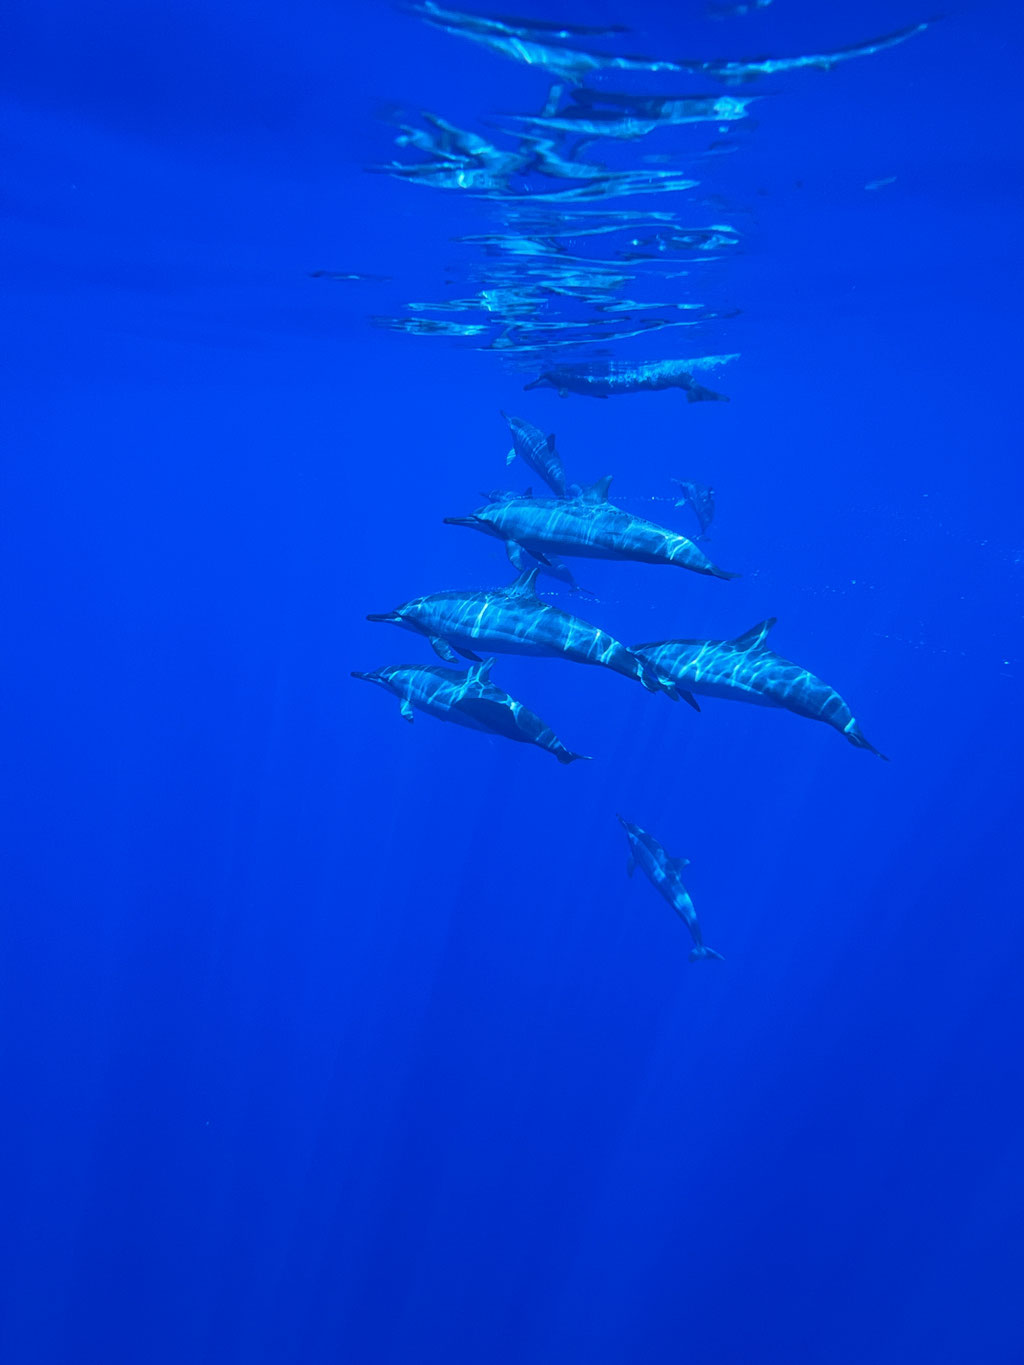 Sortie entre amis : Observer sans l'eau les dauphins à la réunion